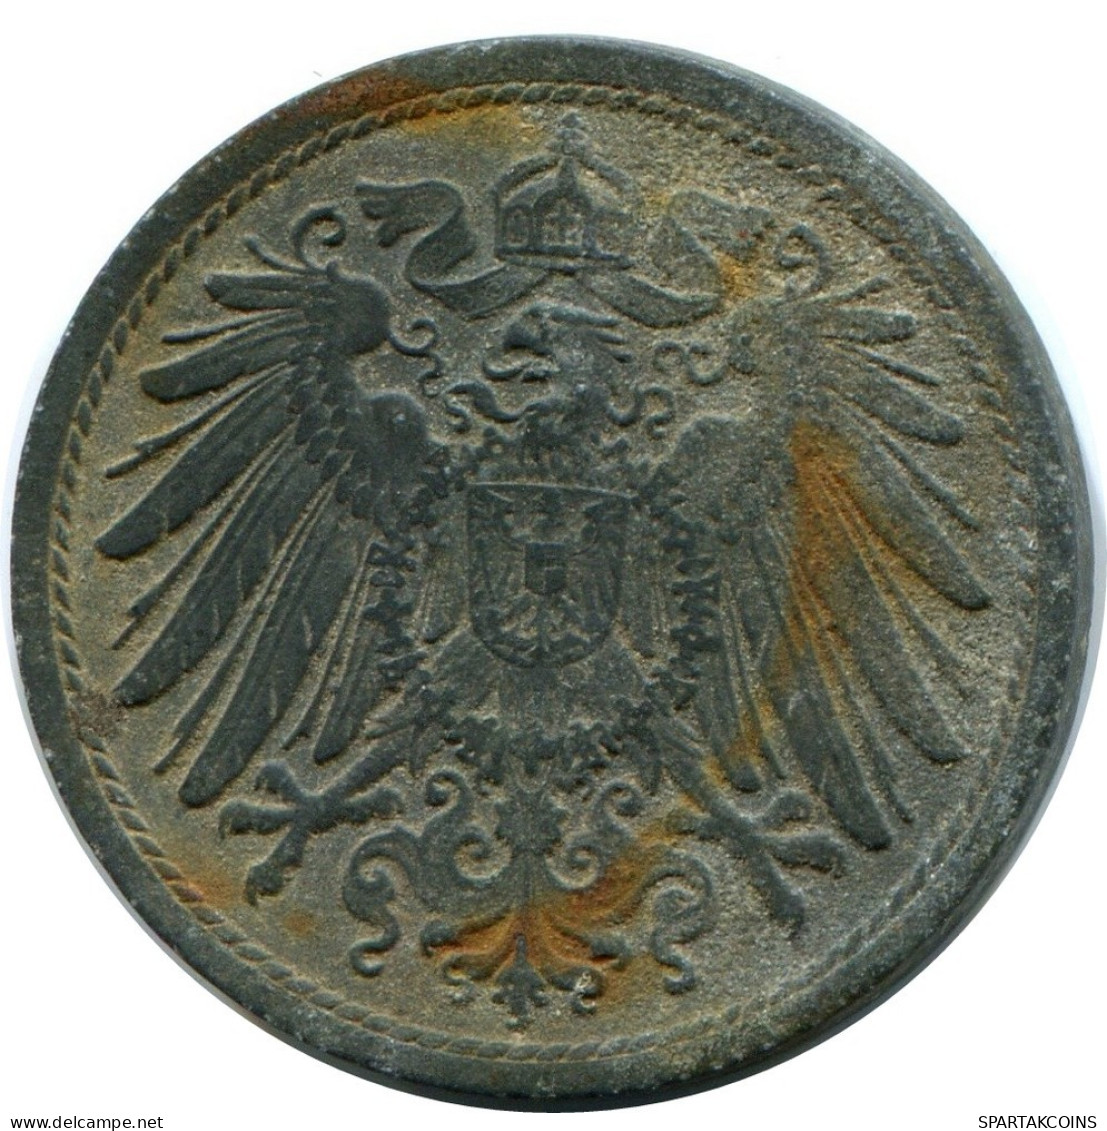 10 PFENNIG 1921 ALEMANIA Moneda GERMANY #DA772.E.A - 10 Rentenpfennig & 10 Reichspfennig